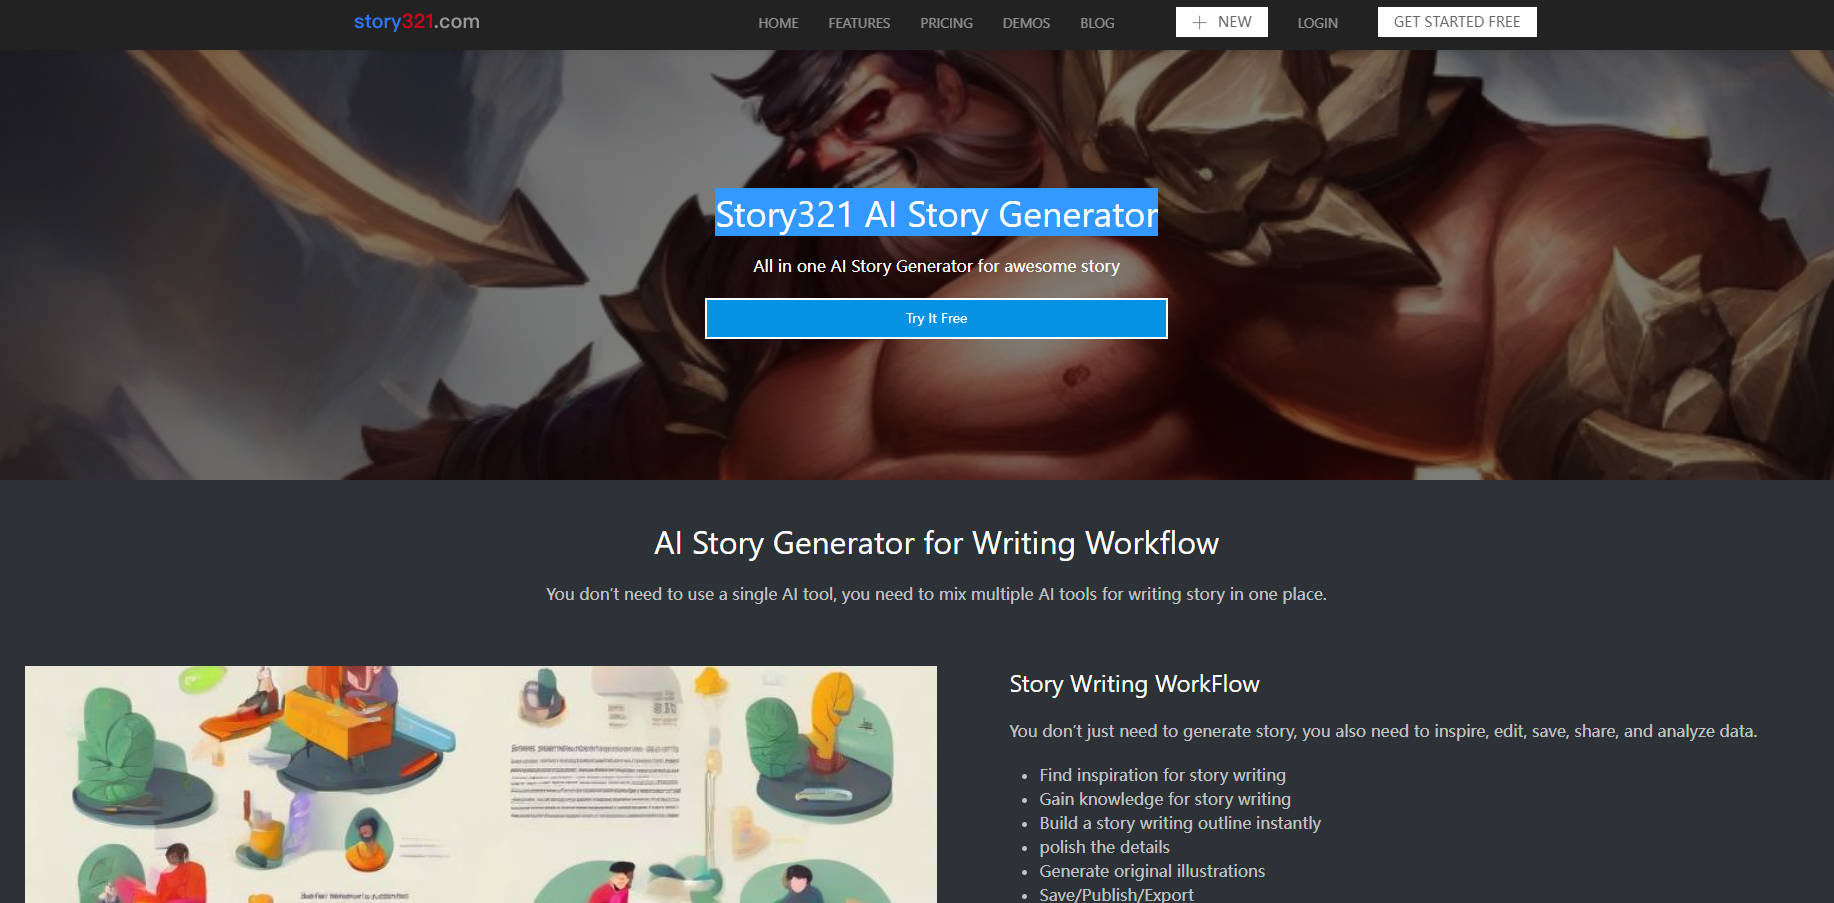 Story321 AI Story Generator